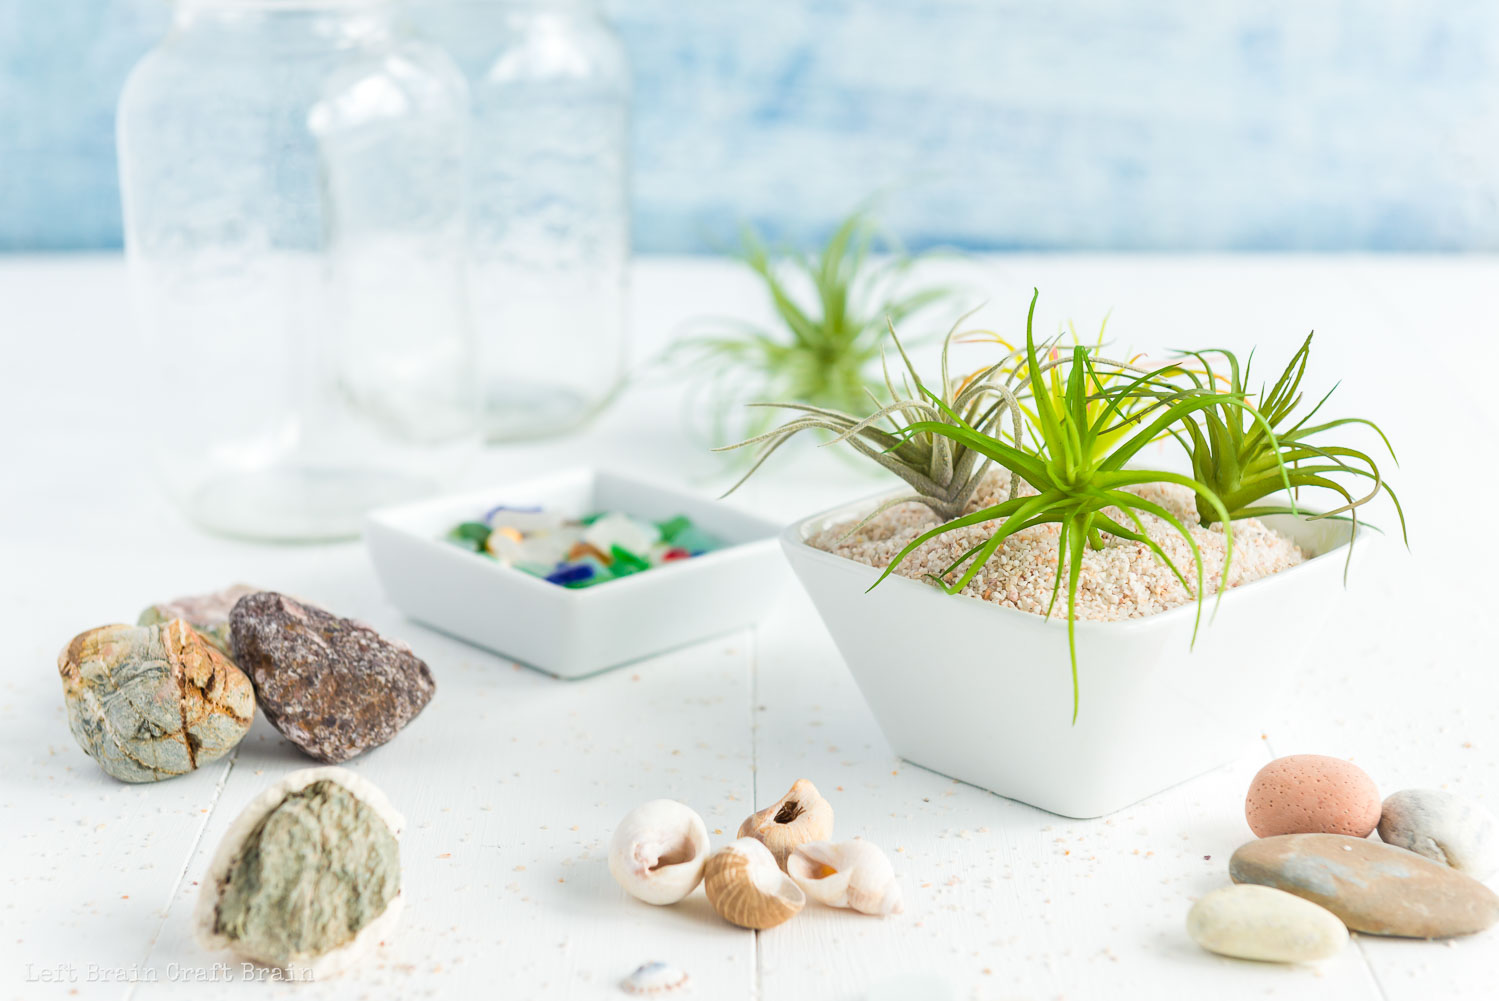 supplies you need to make an air plant terrarium glass jars rocks shells sea glass sand air plants